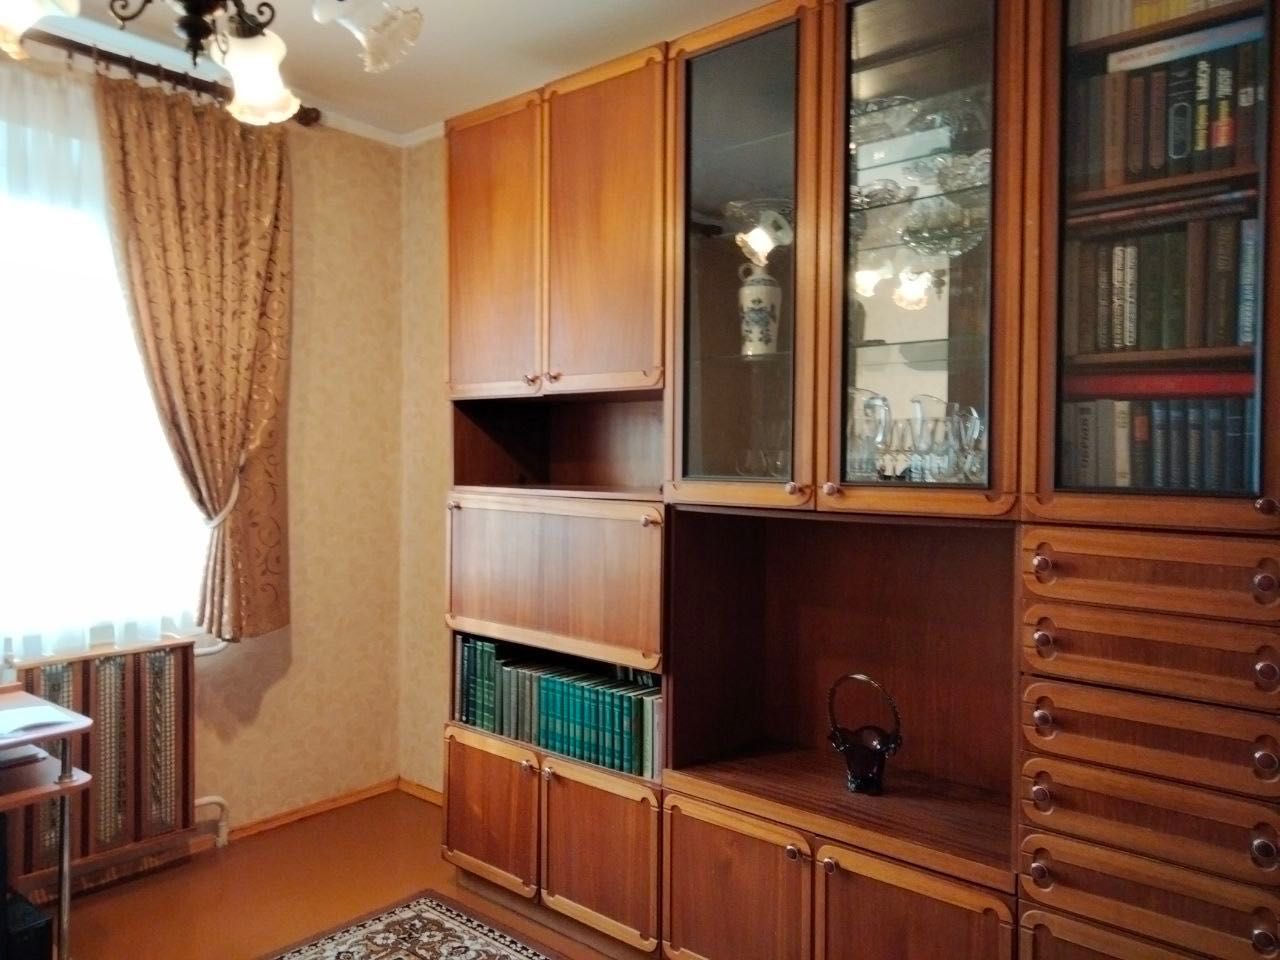 Продам 4-х кімнатну квартиру у м. Чернігові, від власника.